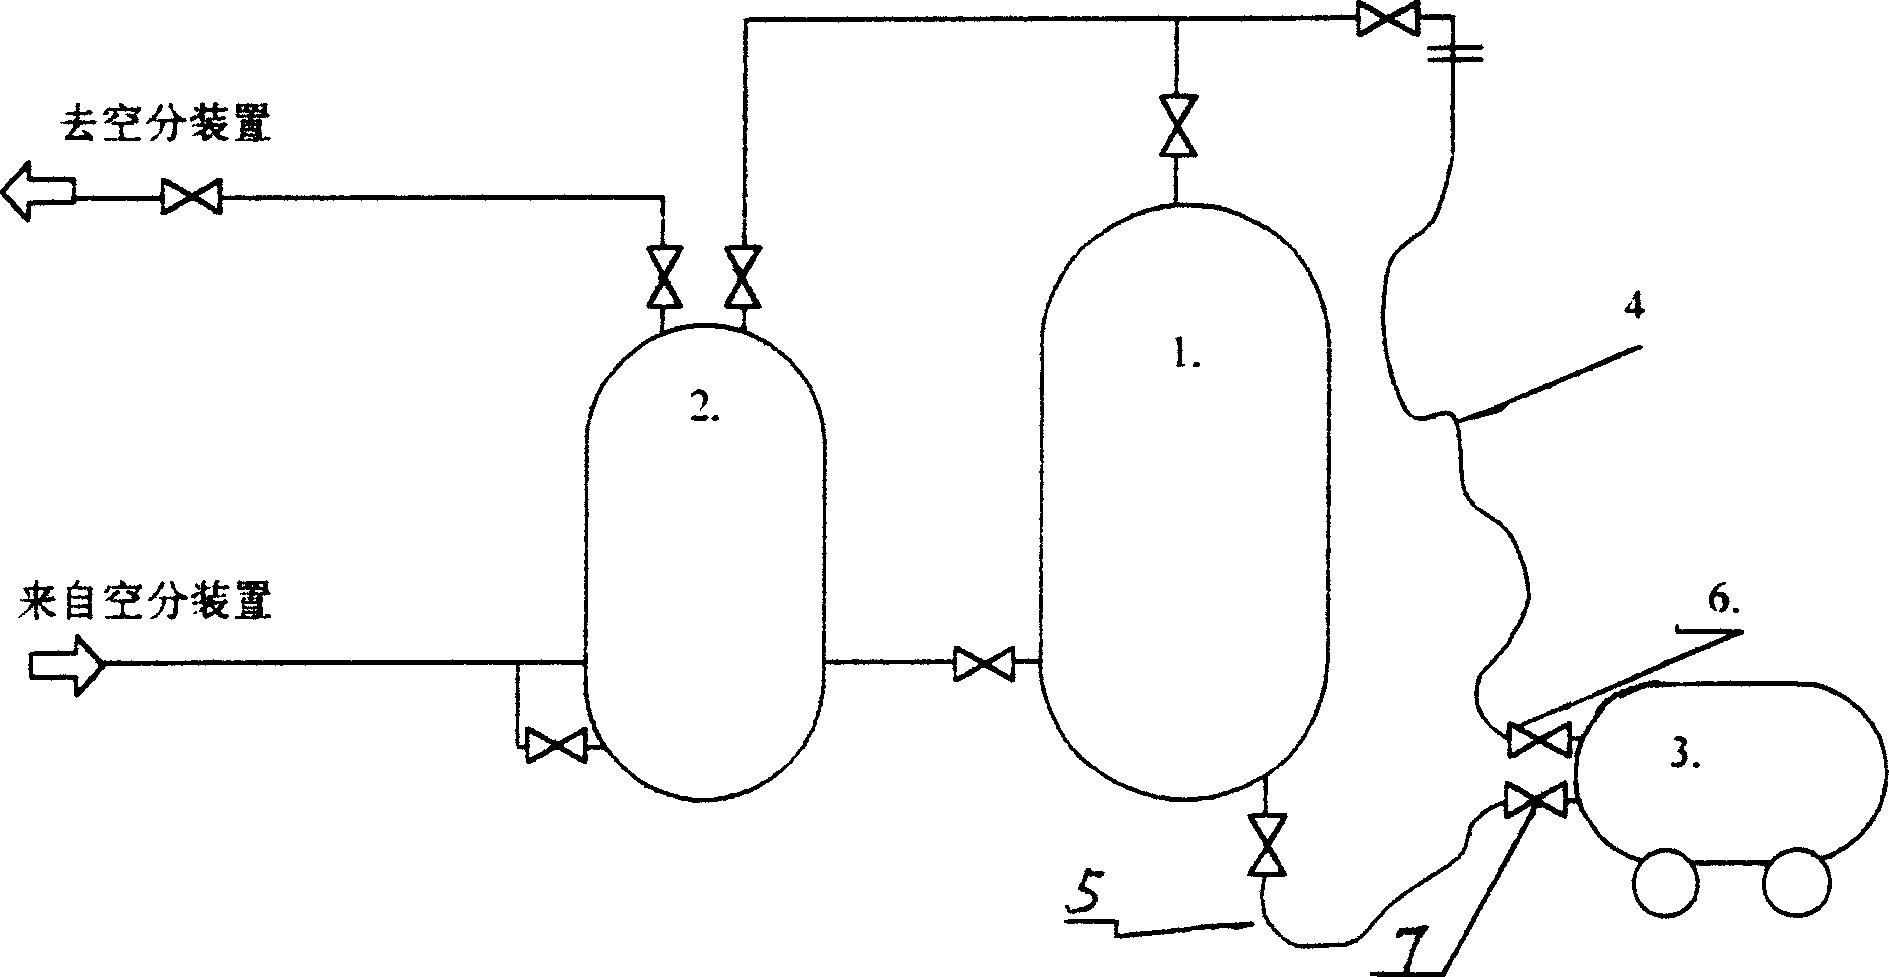 Low temperature liquid filling method for a tank car